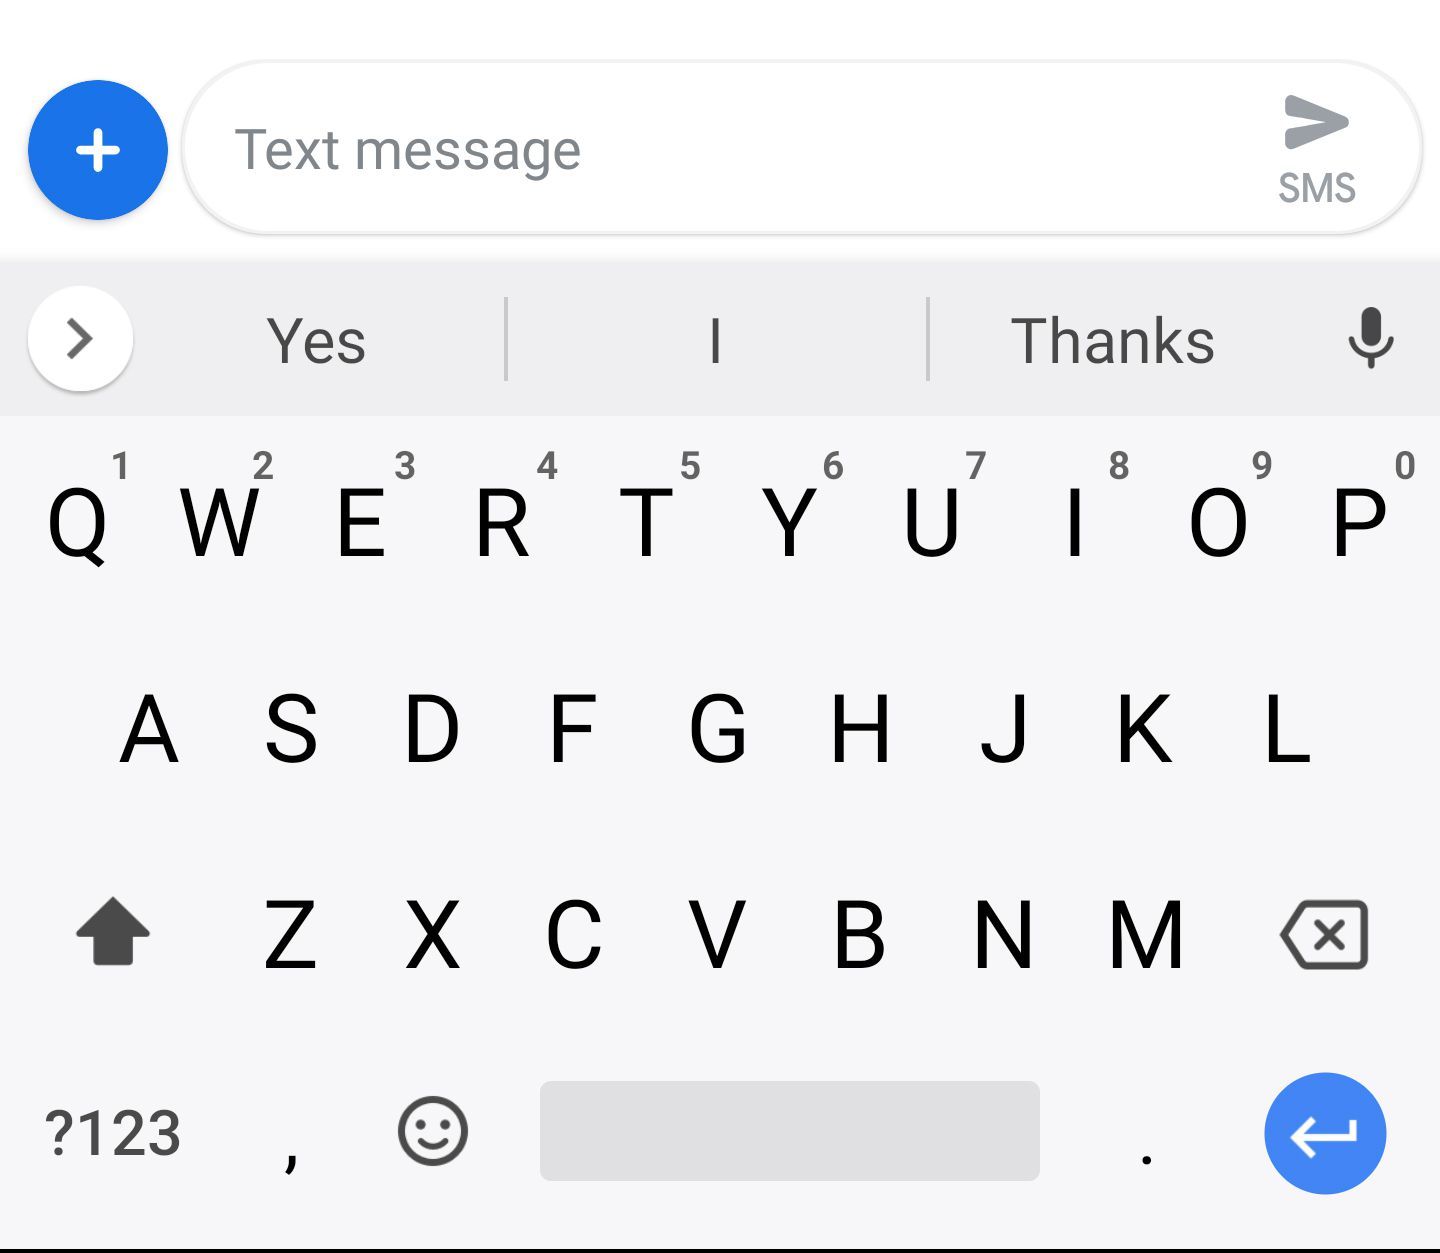 Клавиатура Android в приложении для обмена текстовыми сообщениями